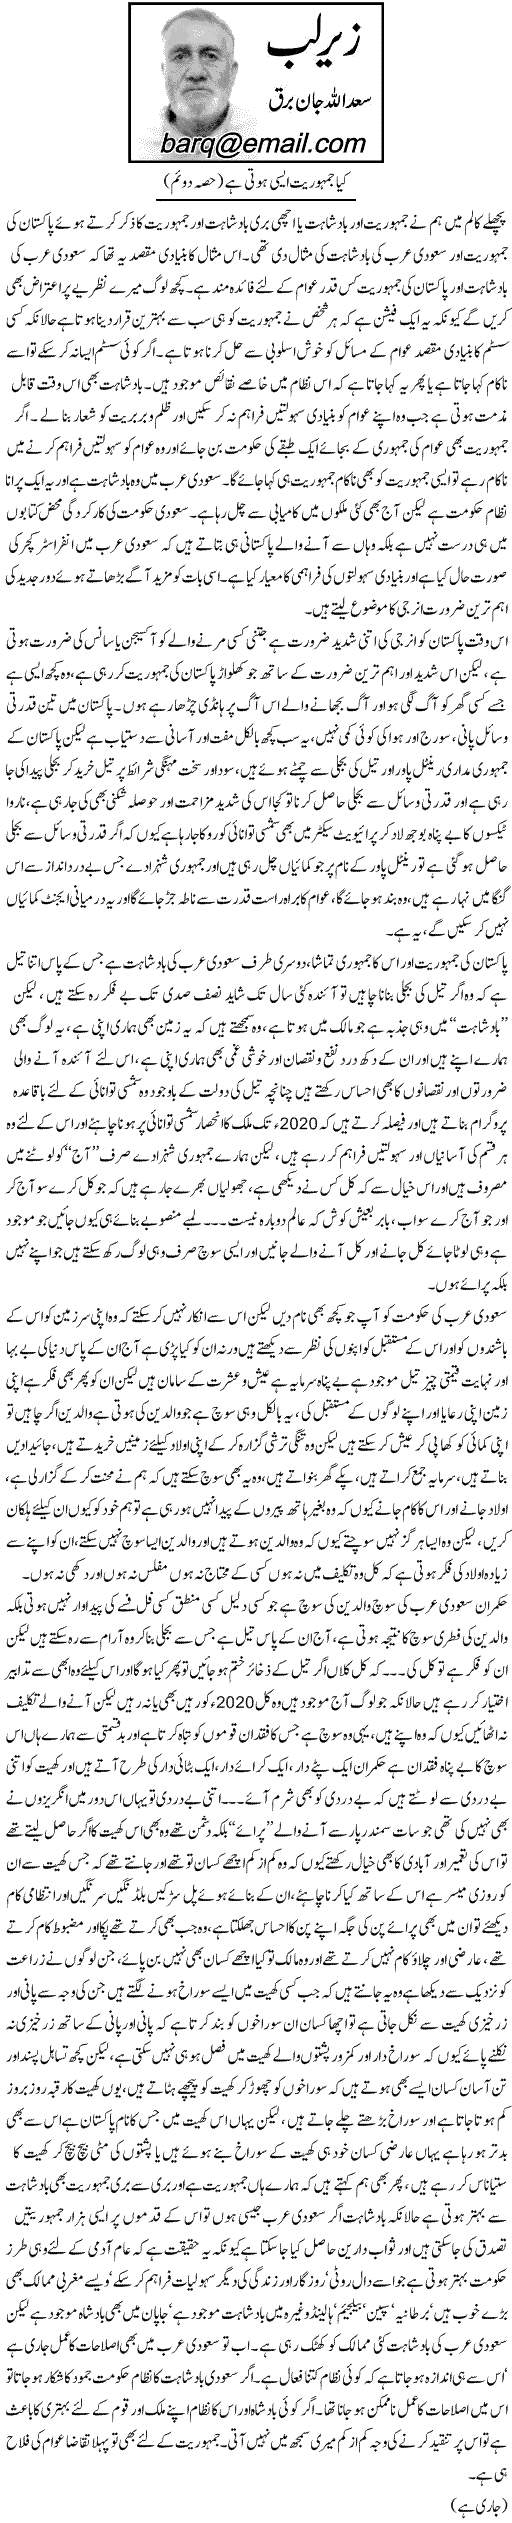 Minhaj-ul-Quran  Print Media Coverage Daily Express - Saadullah Jan Barq